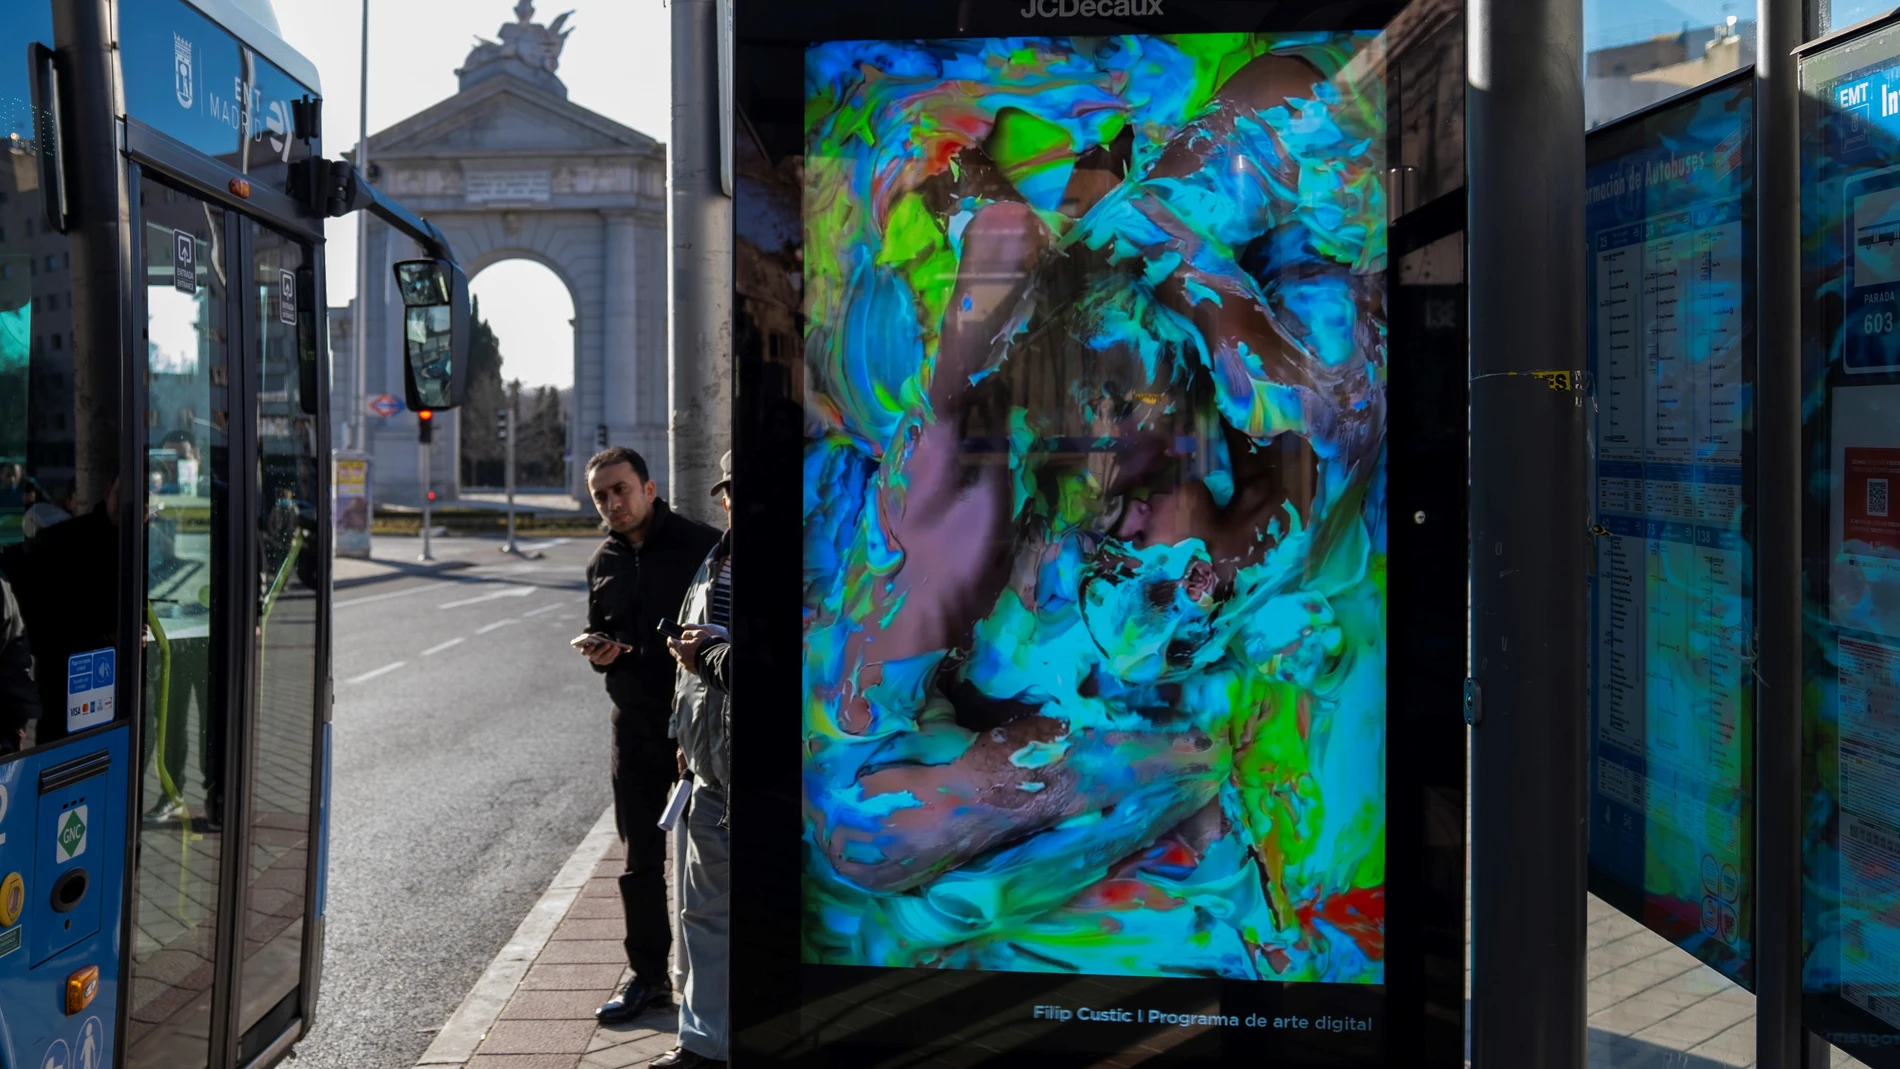 Cuadro digital de Filip Custic en una parada de autobús de Moncloa (Madrid).